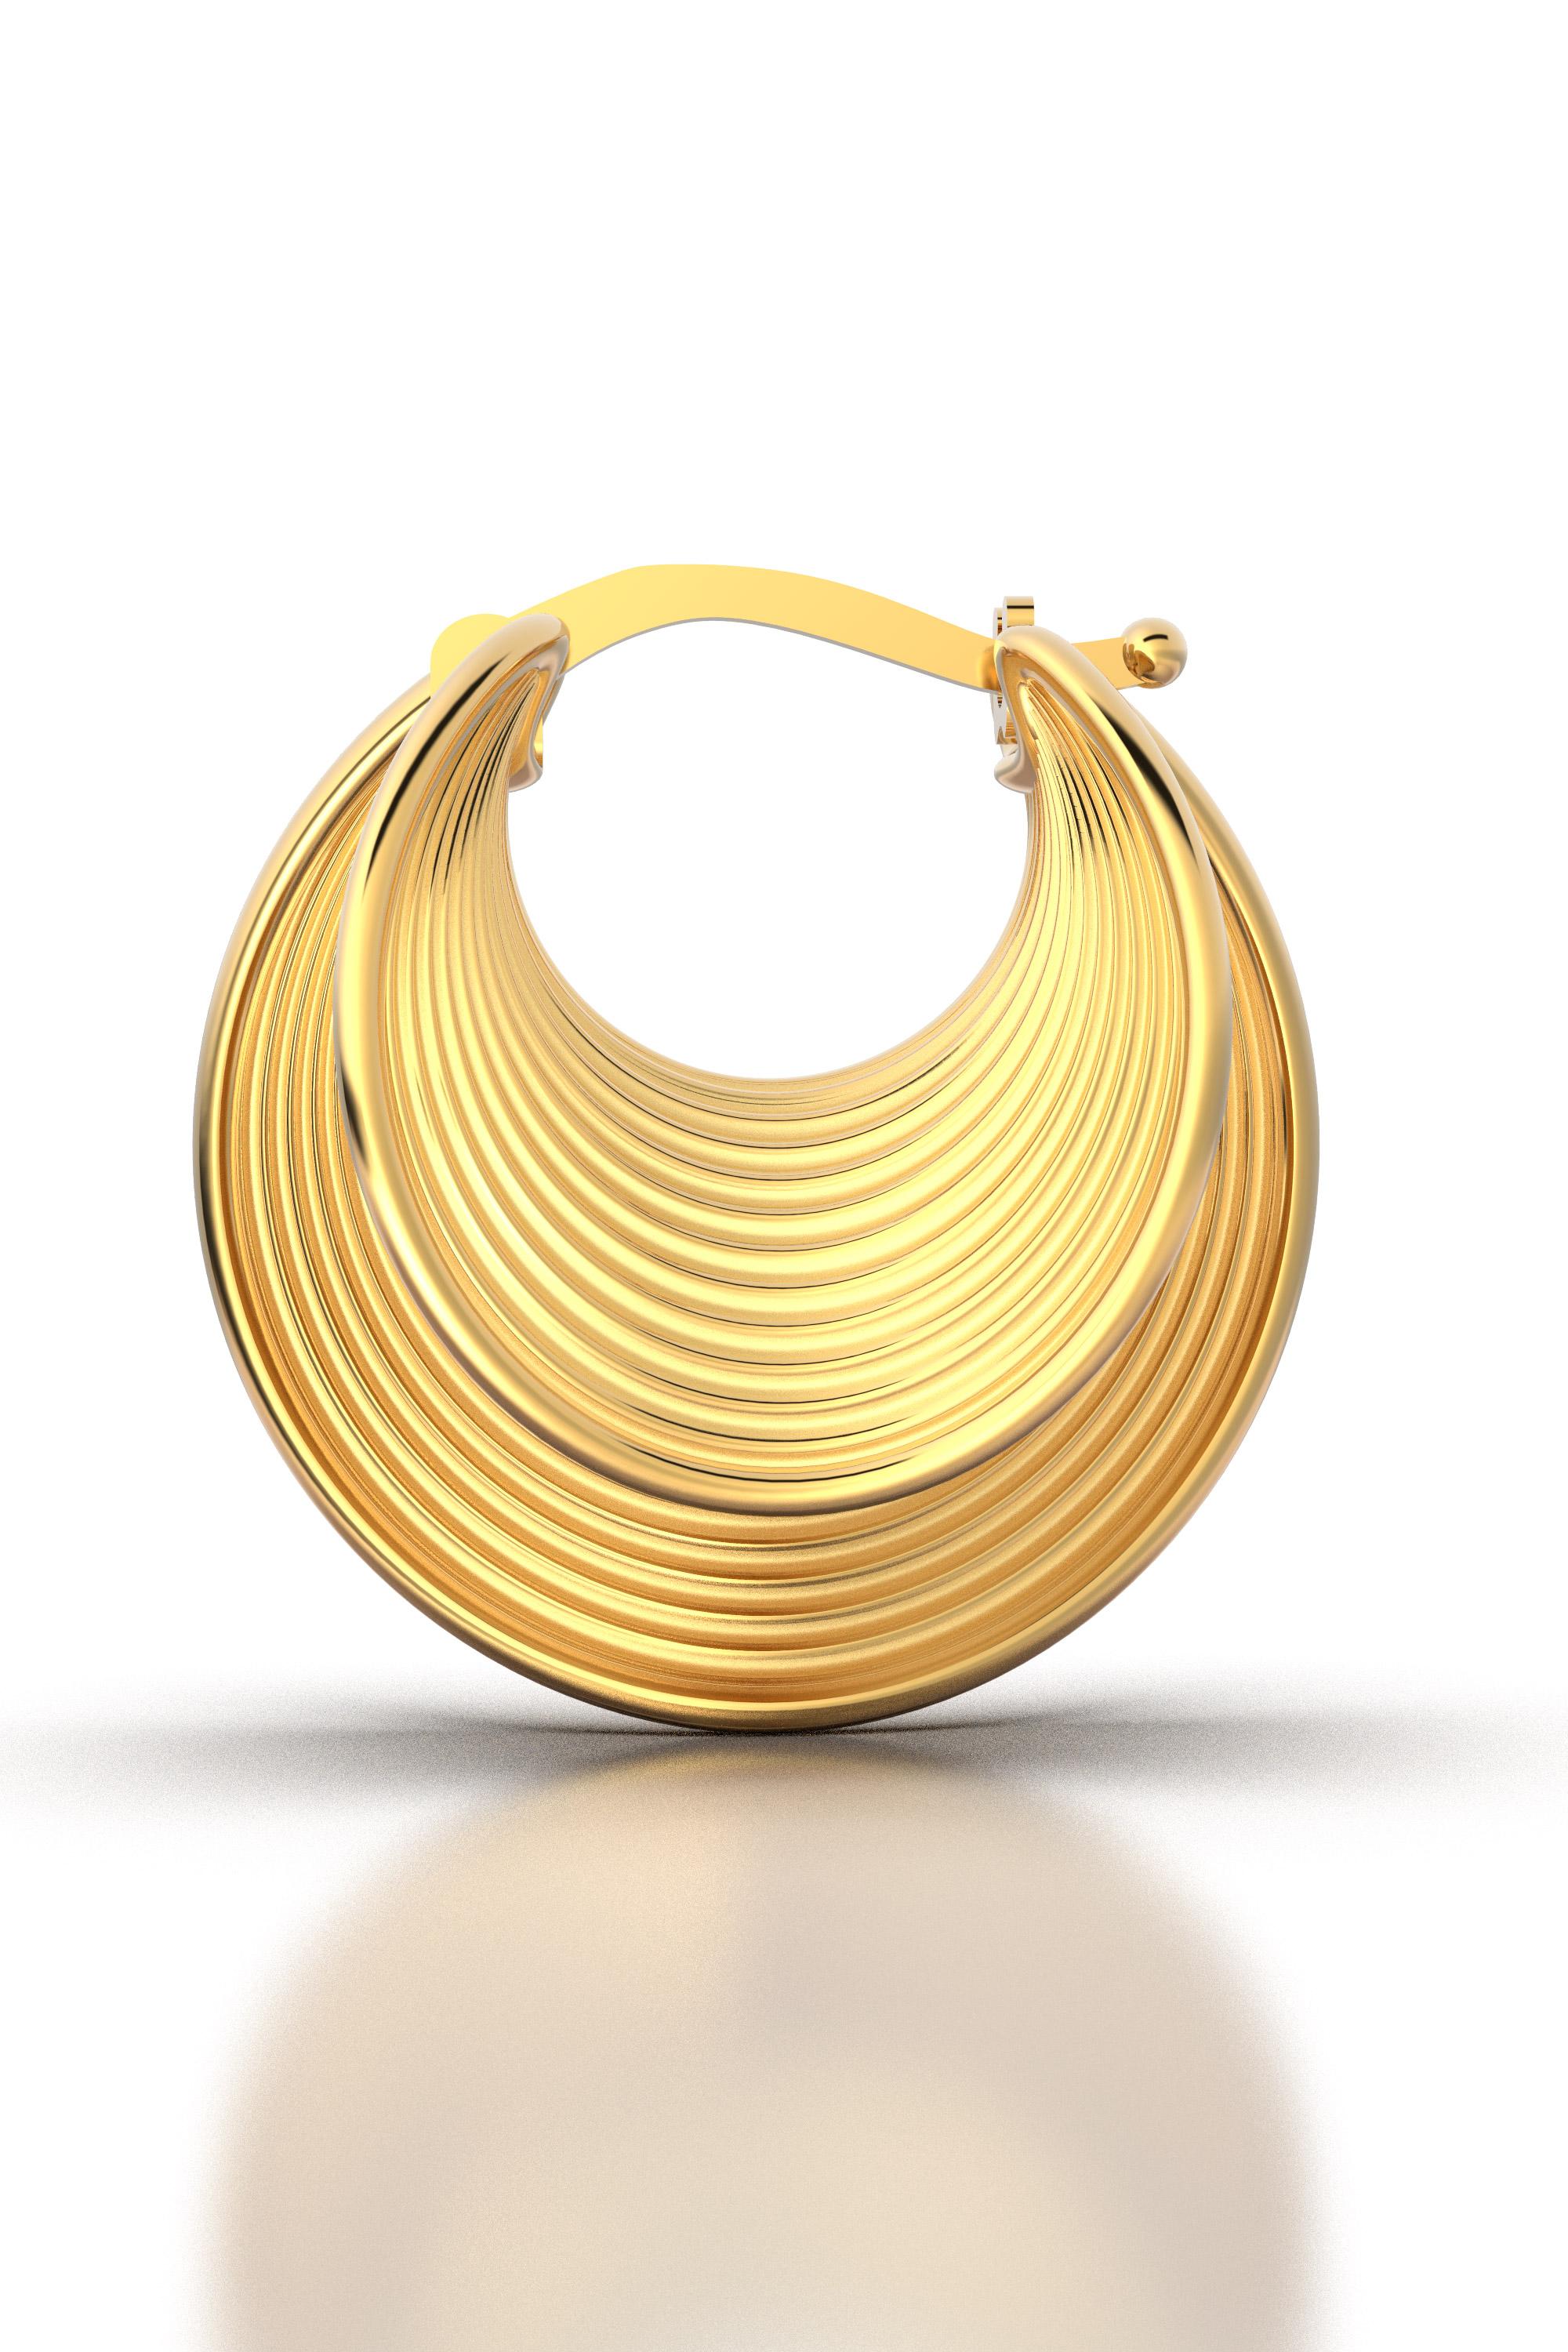 italian gold earrings